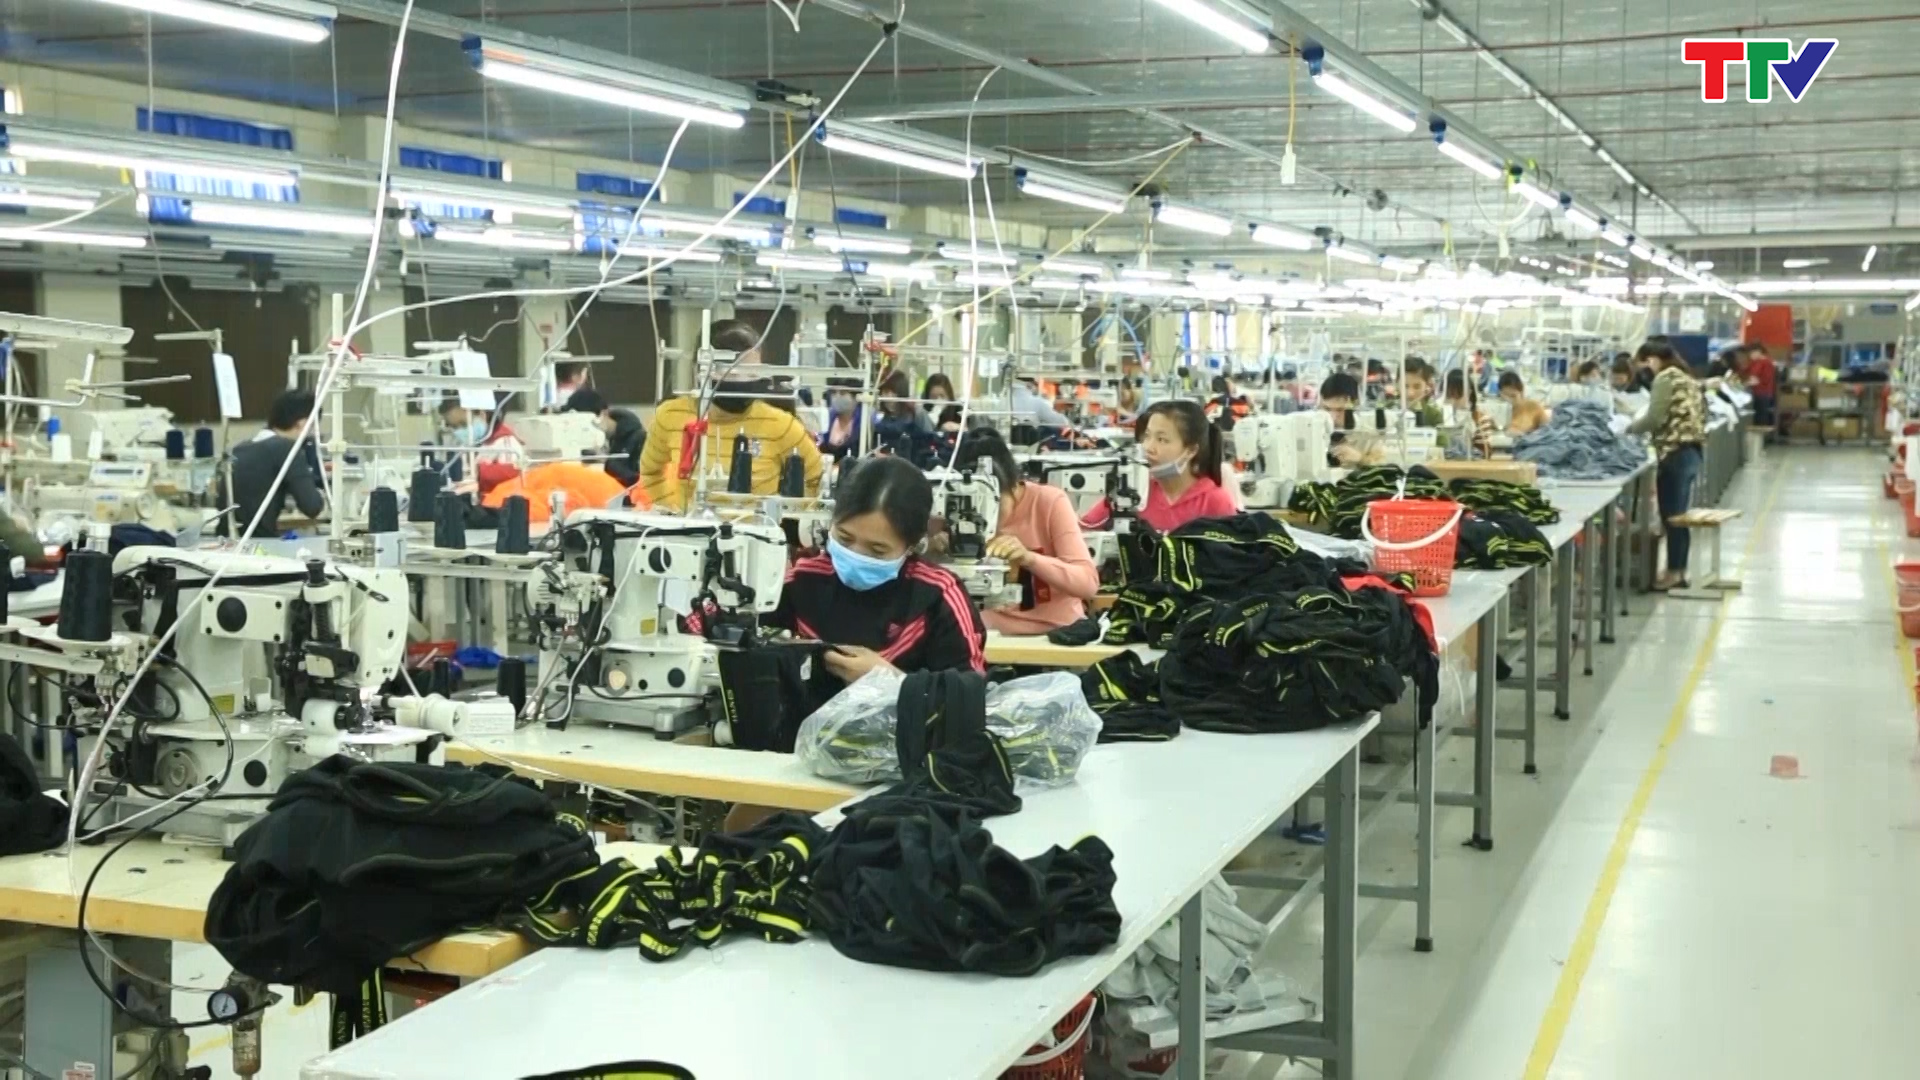 Chính phủ đã xác định công nghiệp hỗ trợ là trọng tâm trong phát triển công nghiệp của Việt Nam thời gian tới, trong đó đặc biệt là các ngành điện tử, dệt may, da giầy, thời trang, ô tô..